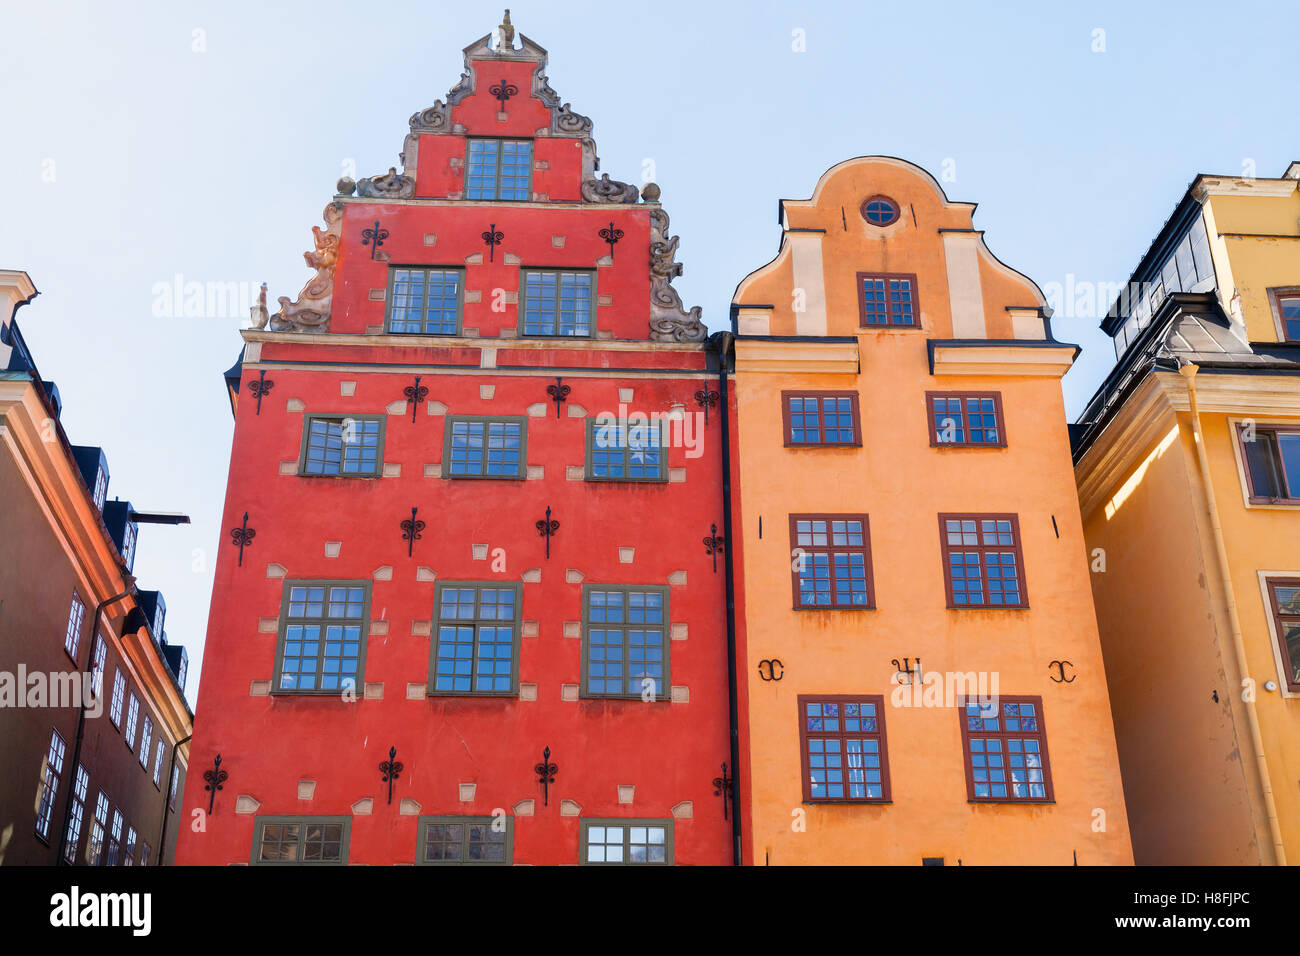 Bunte ikonischen Gebäude am Stortorget, ein kleinen öffentlichen Platz auf Insel Gamla Stan, die Altstadt mitten in Stockholm, Schweden Stockfoto